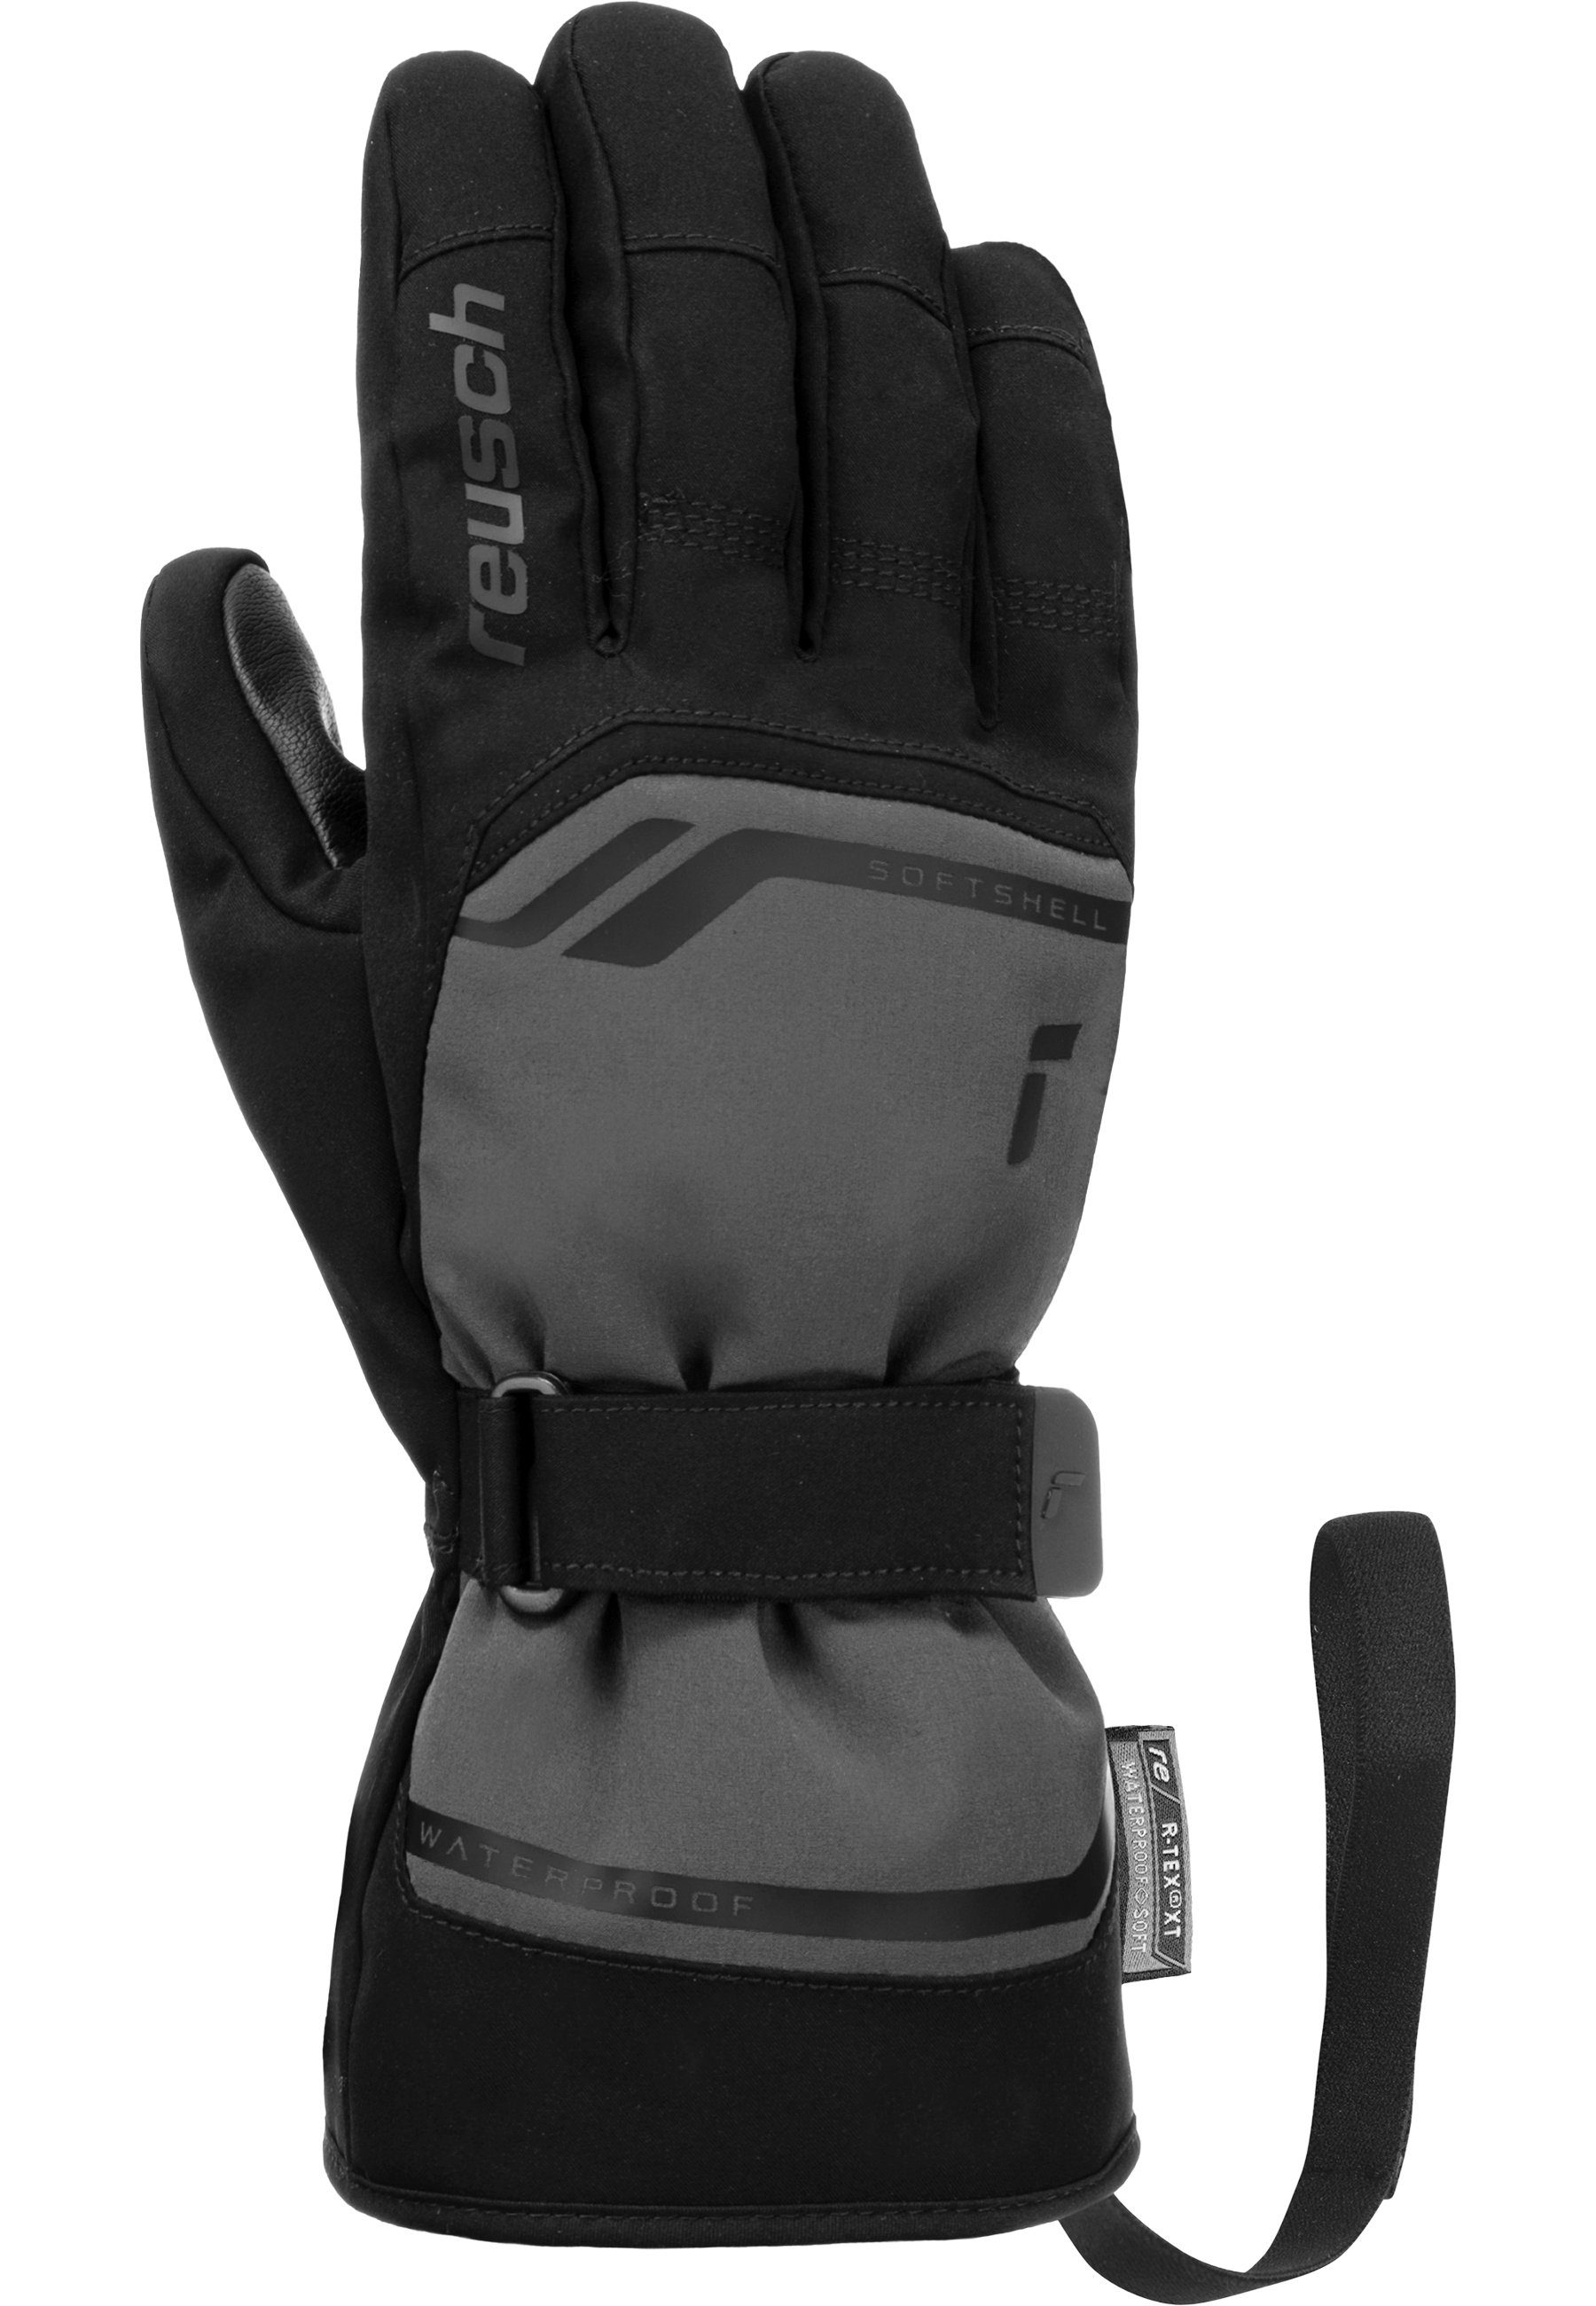 grau-schwarz warm, sehr atmungsaktiv XT wasserdicht R-TEX® Skihandschuhe Primus Reusch und